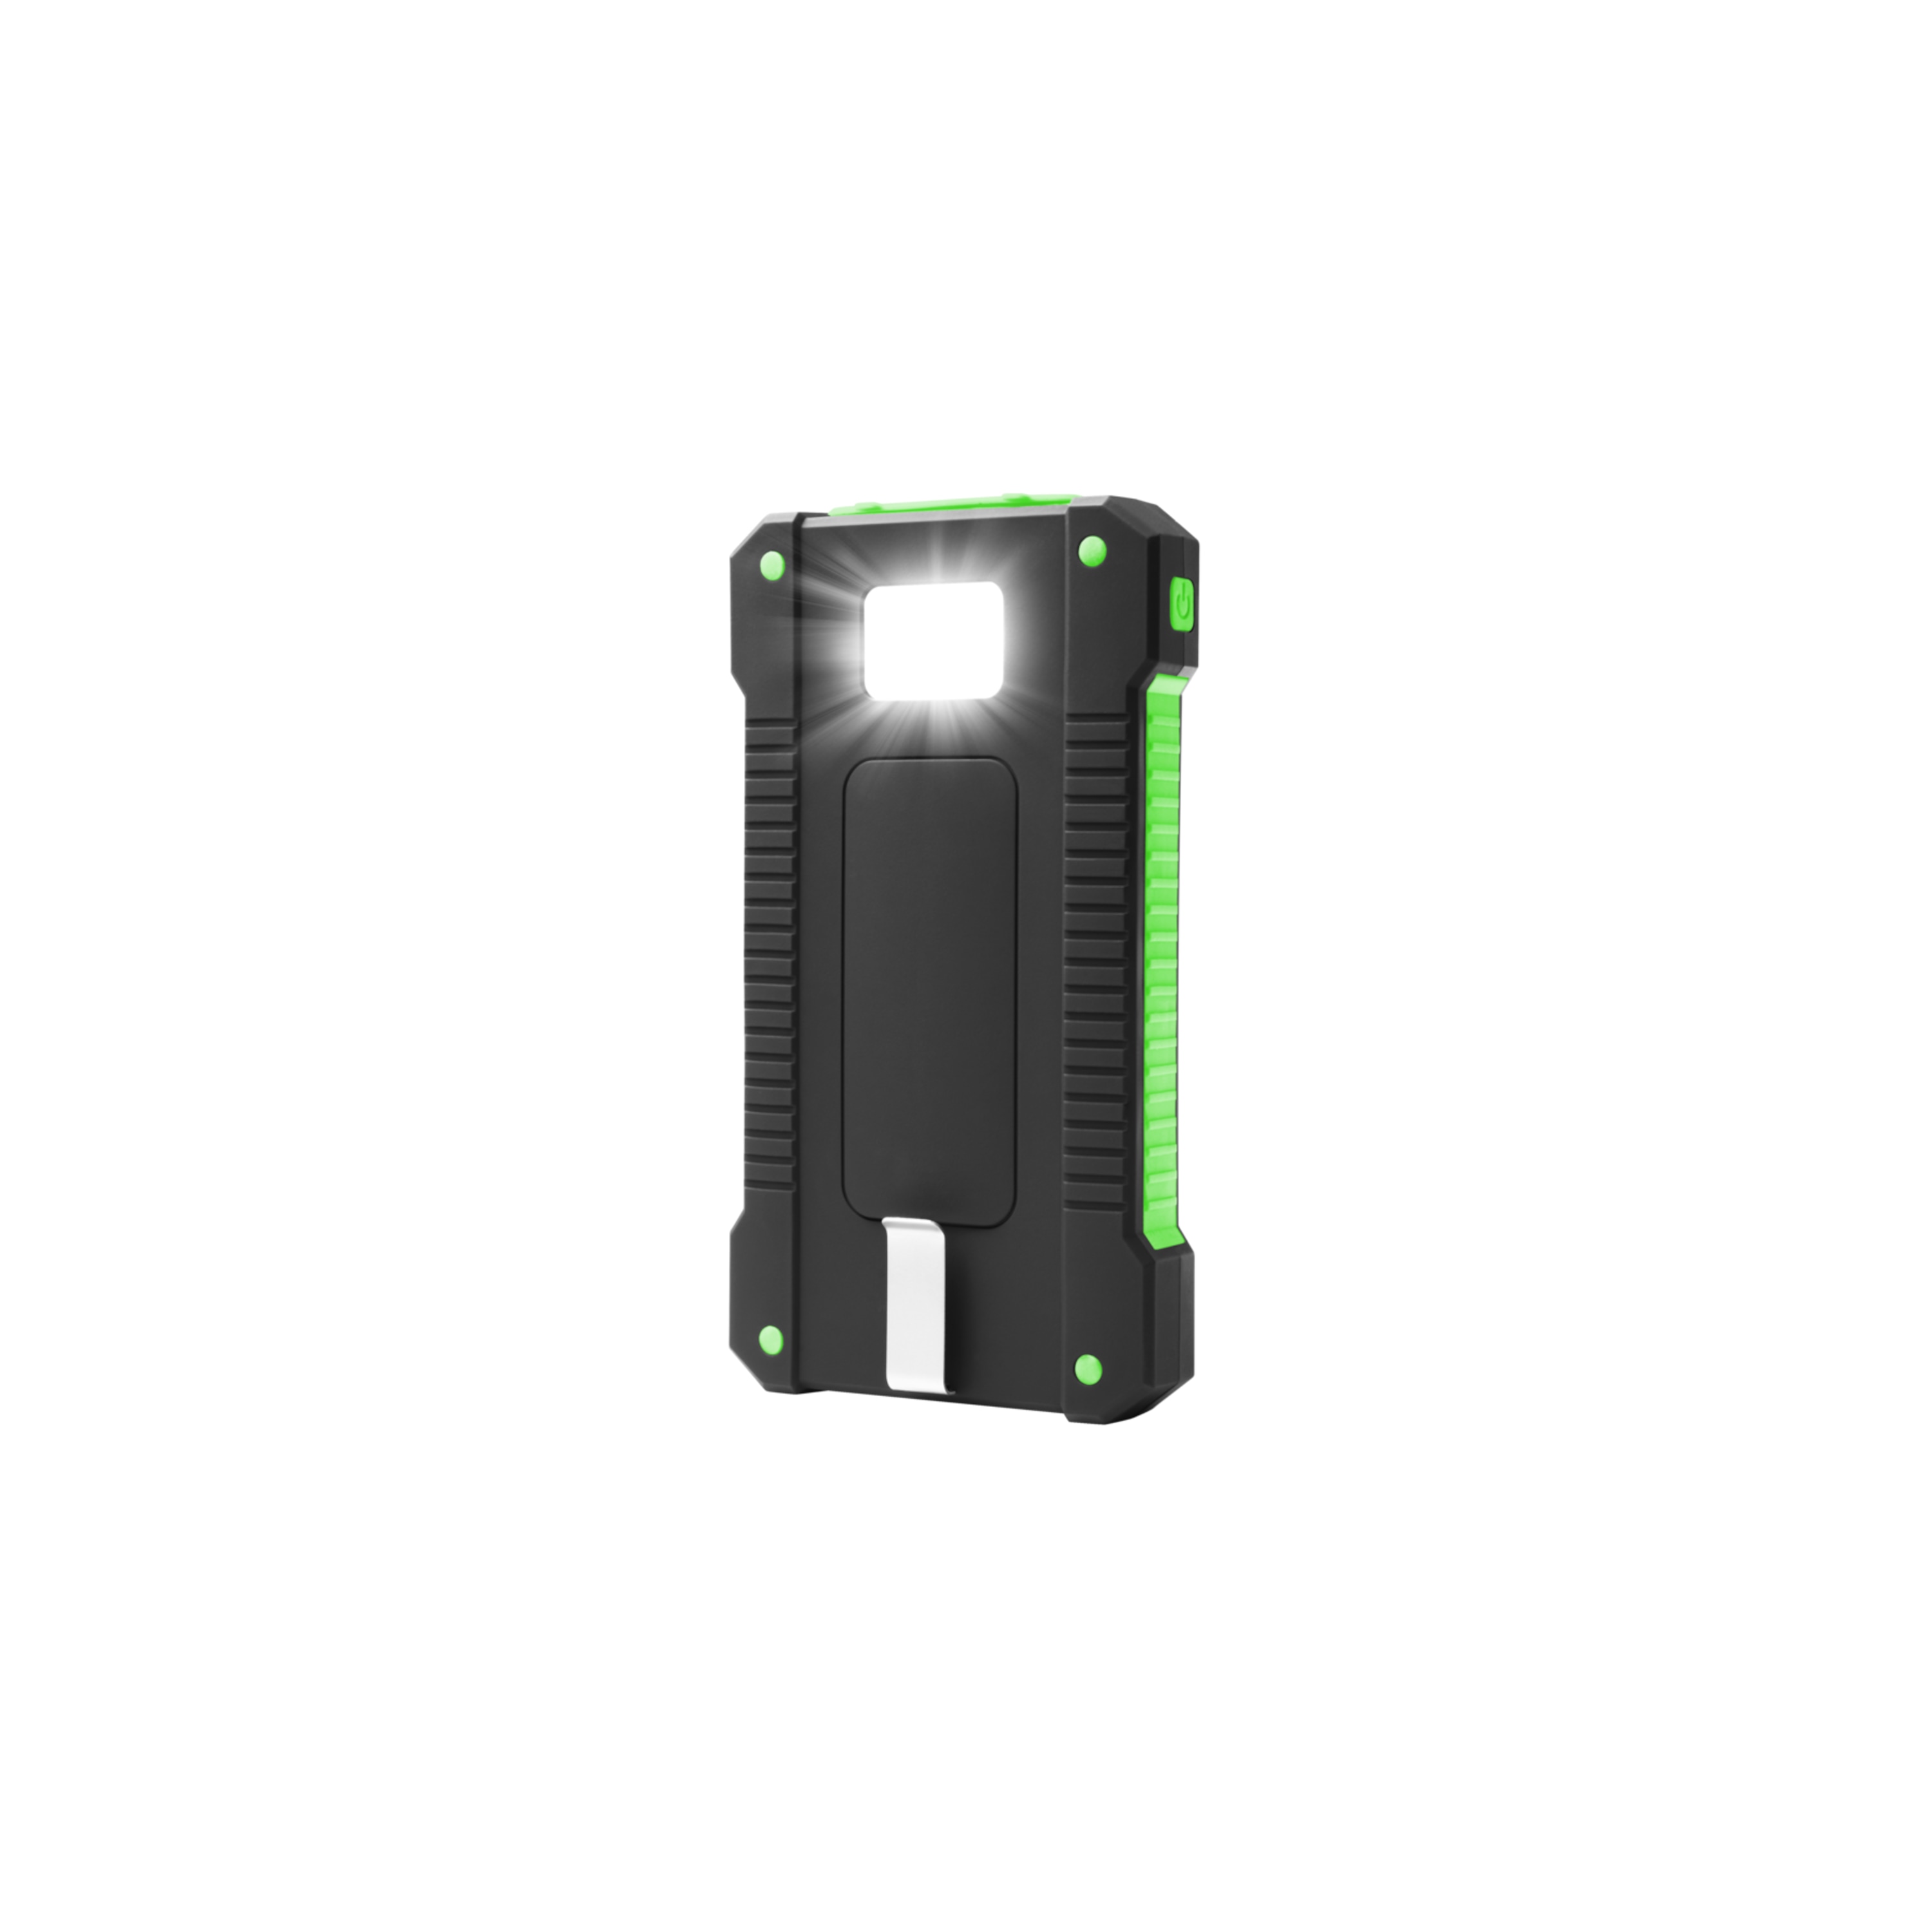 MEDION® LIFE® S74072 Solar Powerbank, stromsparend und umweltbewusst, 2 x USB-Ladeausgang, integrierte Taschenlampe, 8.000 mAh Akku, Status-LEDs, ideal für Camping und auf Reisen